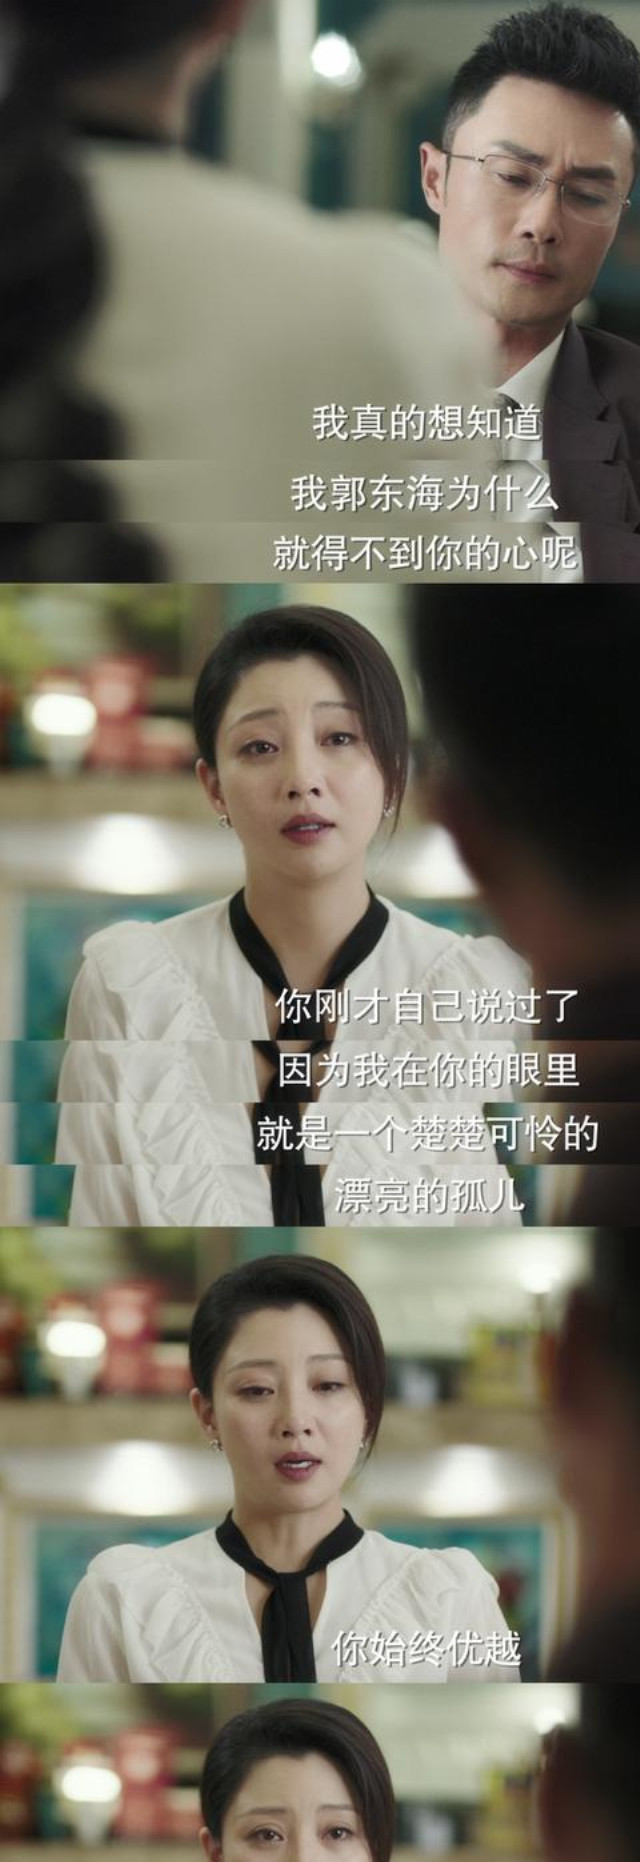 你迟到:莫莉与郭东海离婚时,一句话暗示她与沐建峰的悲惨结局!